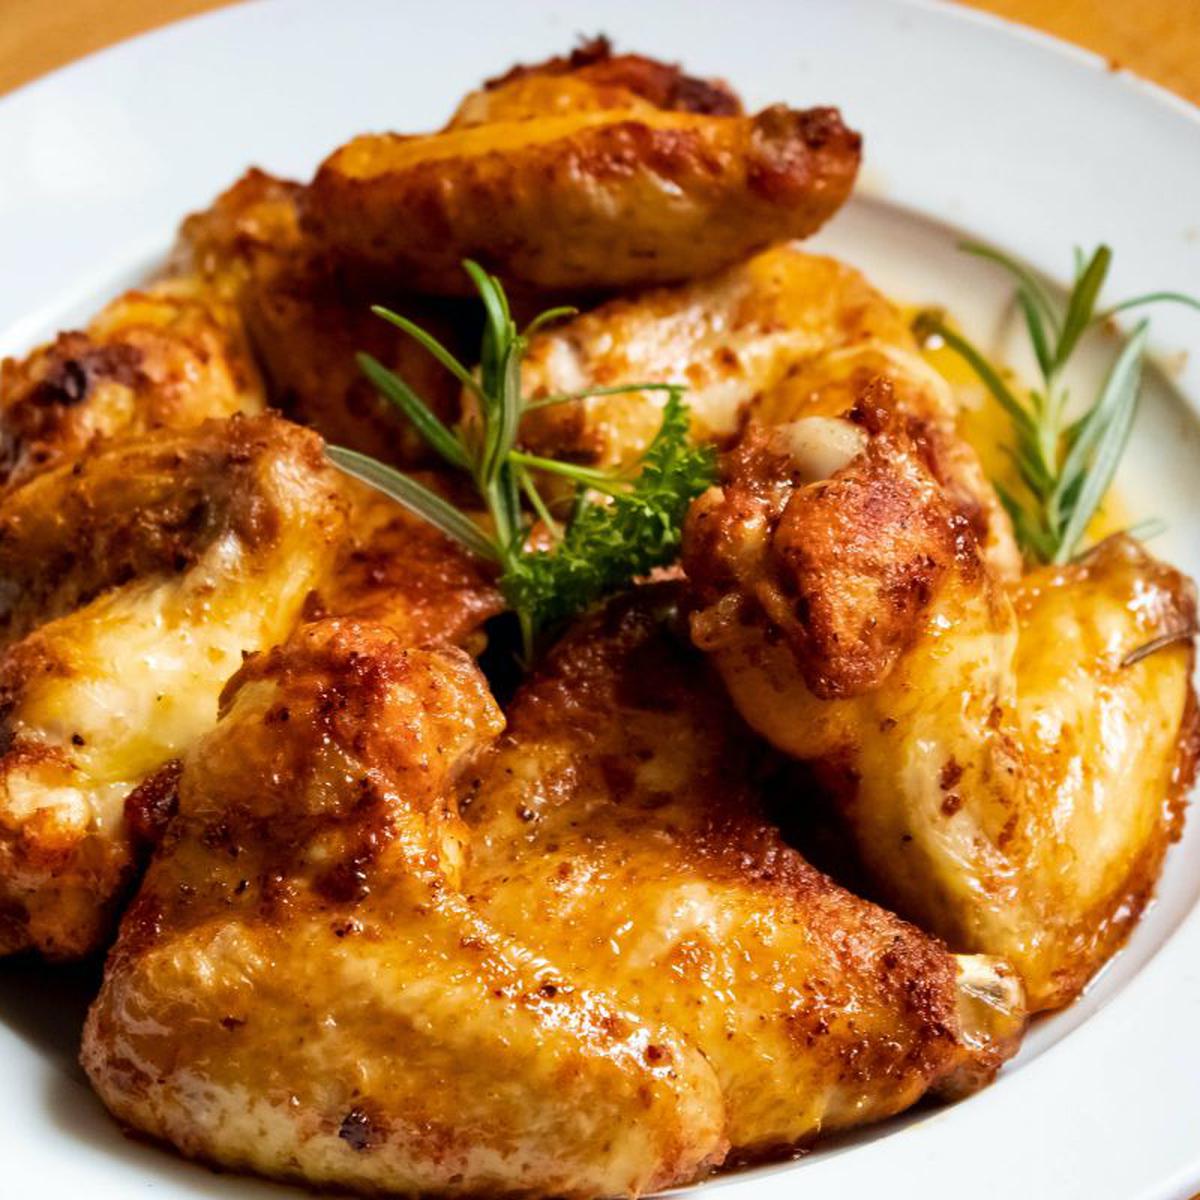 Recetas: qué preparar con el pollo cocido o asado que sobró en la nevera |  Alimentos | Recetas de cocina | Comidas con pechuga de pollo | roast  chicken | México |